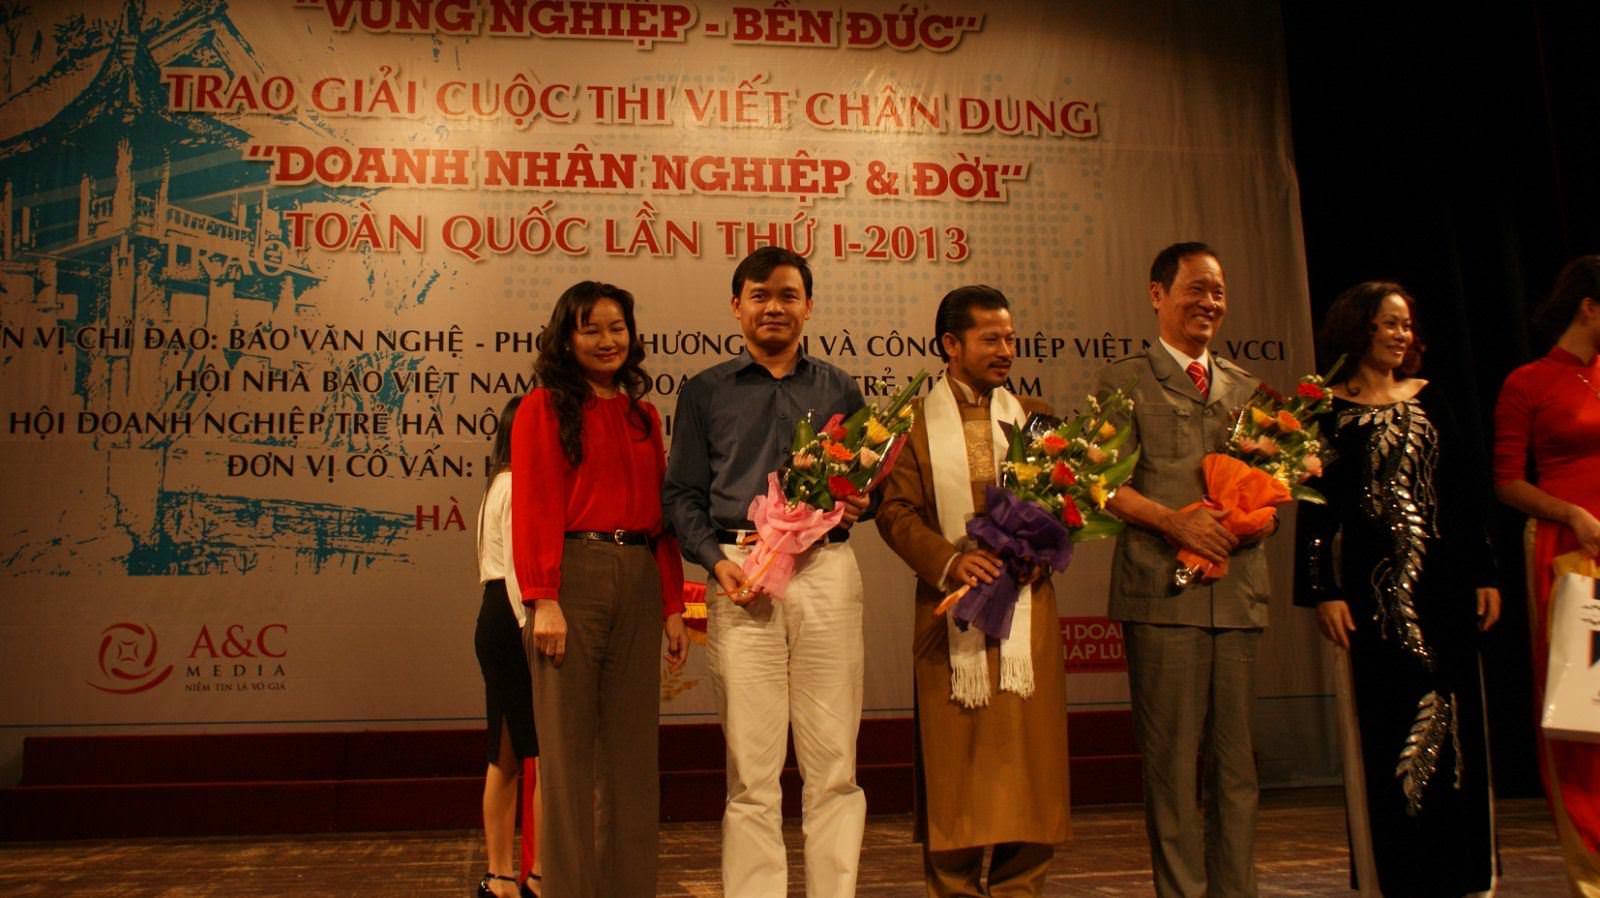 Chủ tịch Nguyễn Xuân Phú vinh dự nhận giải Doanh nhân xuất sắc” trong lễ trao giải “Doanh nhân- Nghiệp và đời” 2